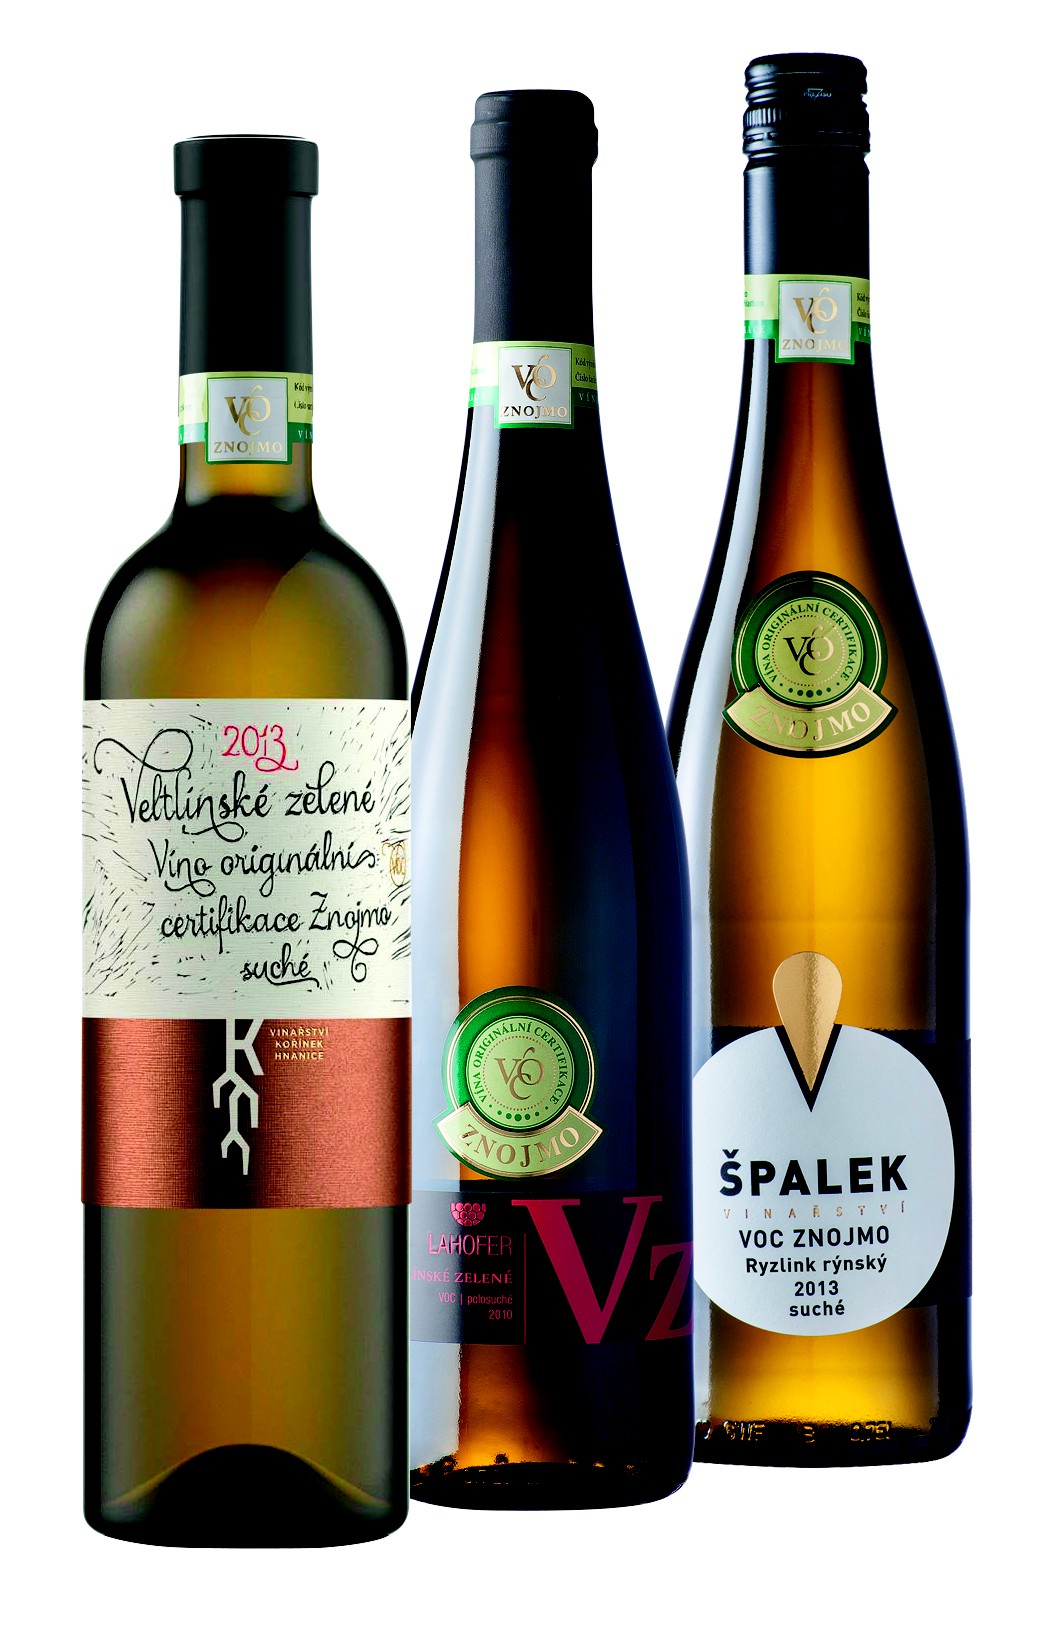 Hlasujte pro vinaře VOC Znojmo v soutěži Vinařství roku!